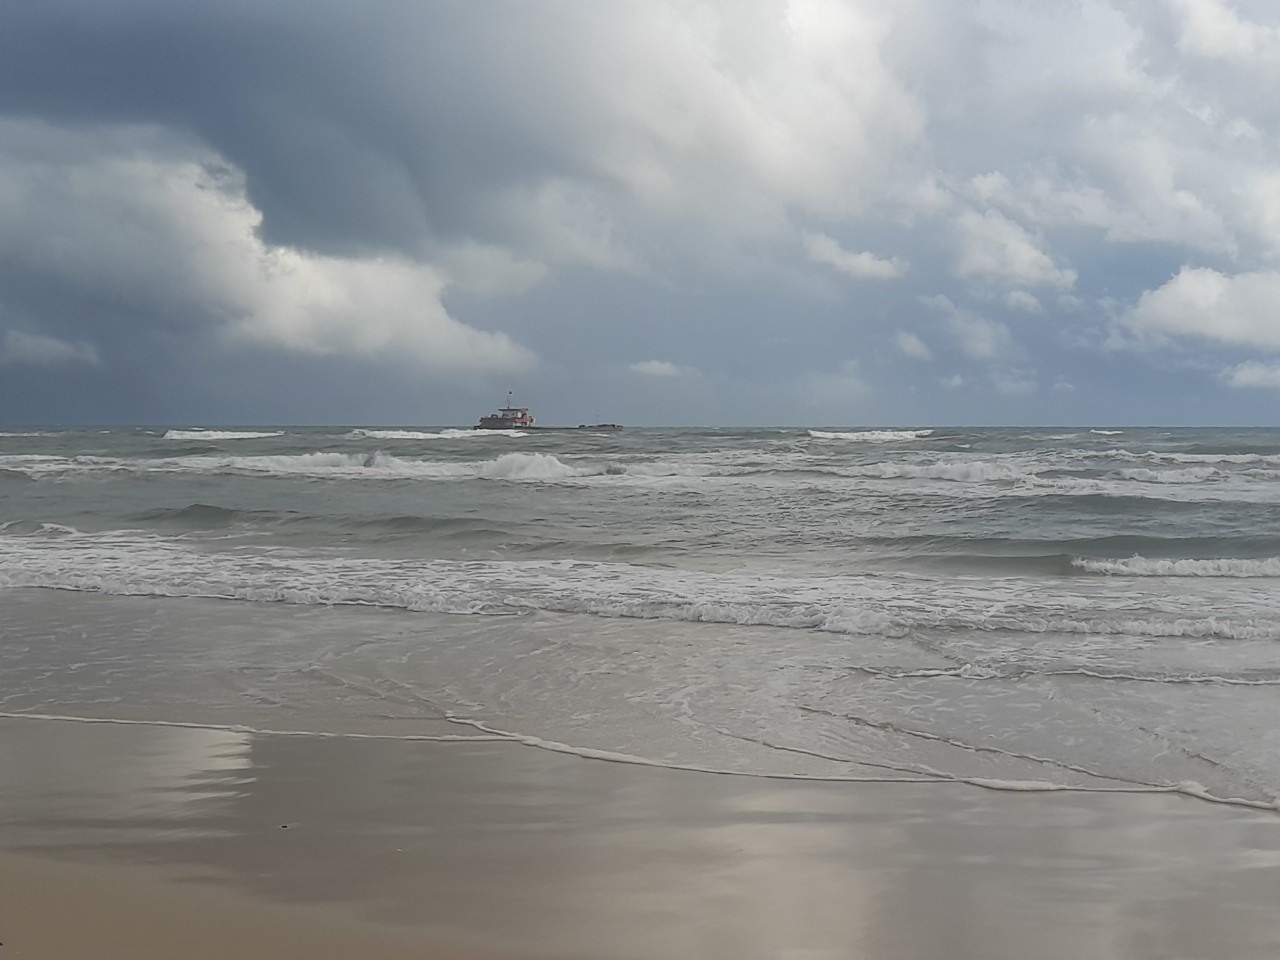 Tàu Chính Quỳnh 19 bị mắc cạn cách bờ biển Thôn 4, xã Gio Hải khoảng 200 m - Ảnh: H.A